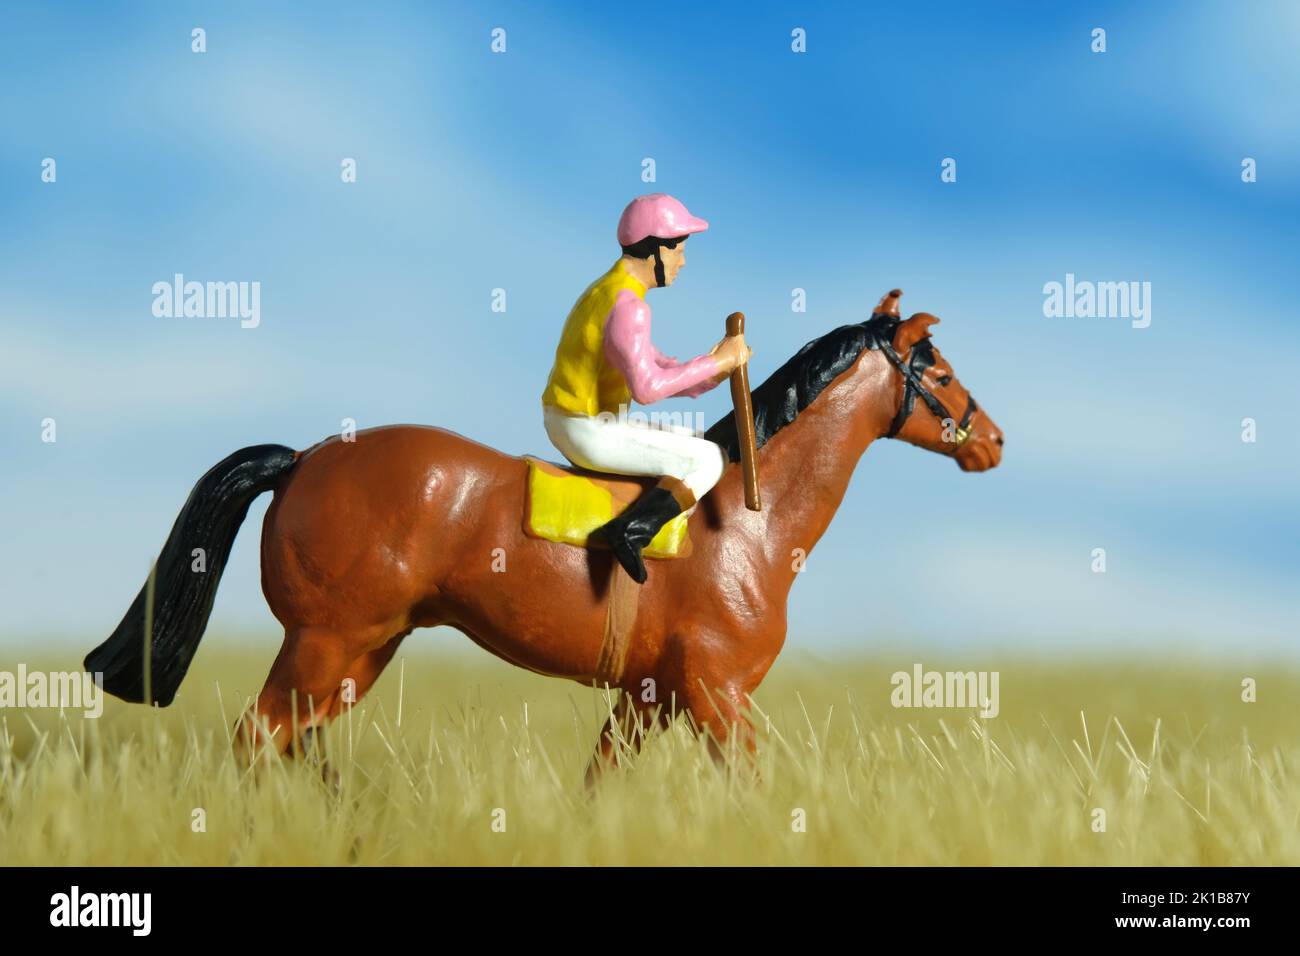 Fotografia di figura giocattolo delle persone in miniatura. Un uomo di jockey a cavallo in un prato asciutto per l'allenamento. Foto dell'immagine Foto Stock